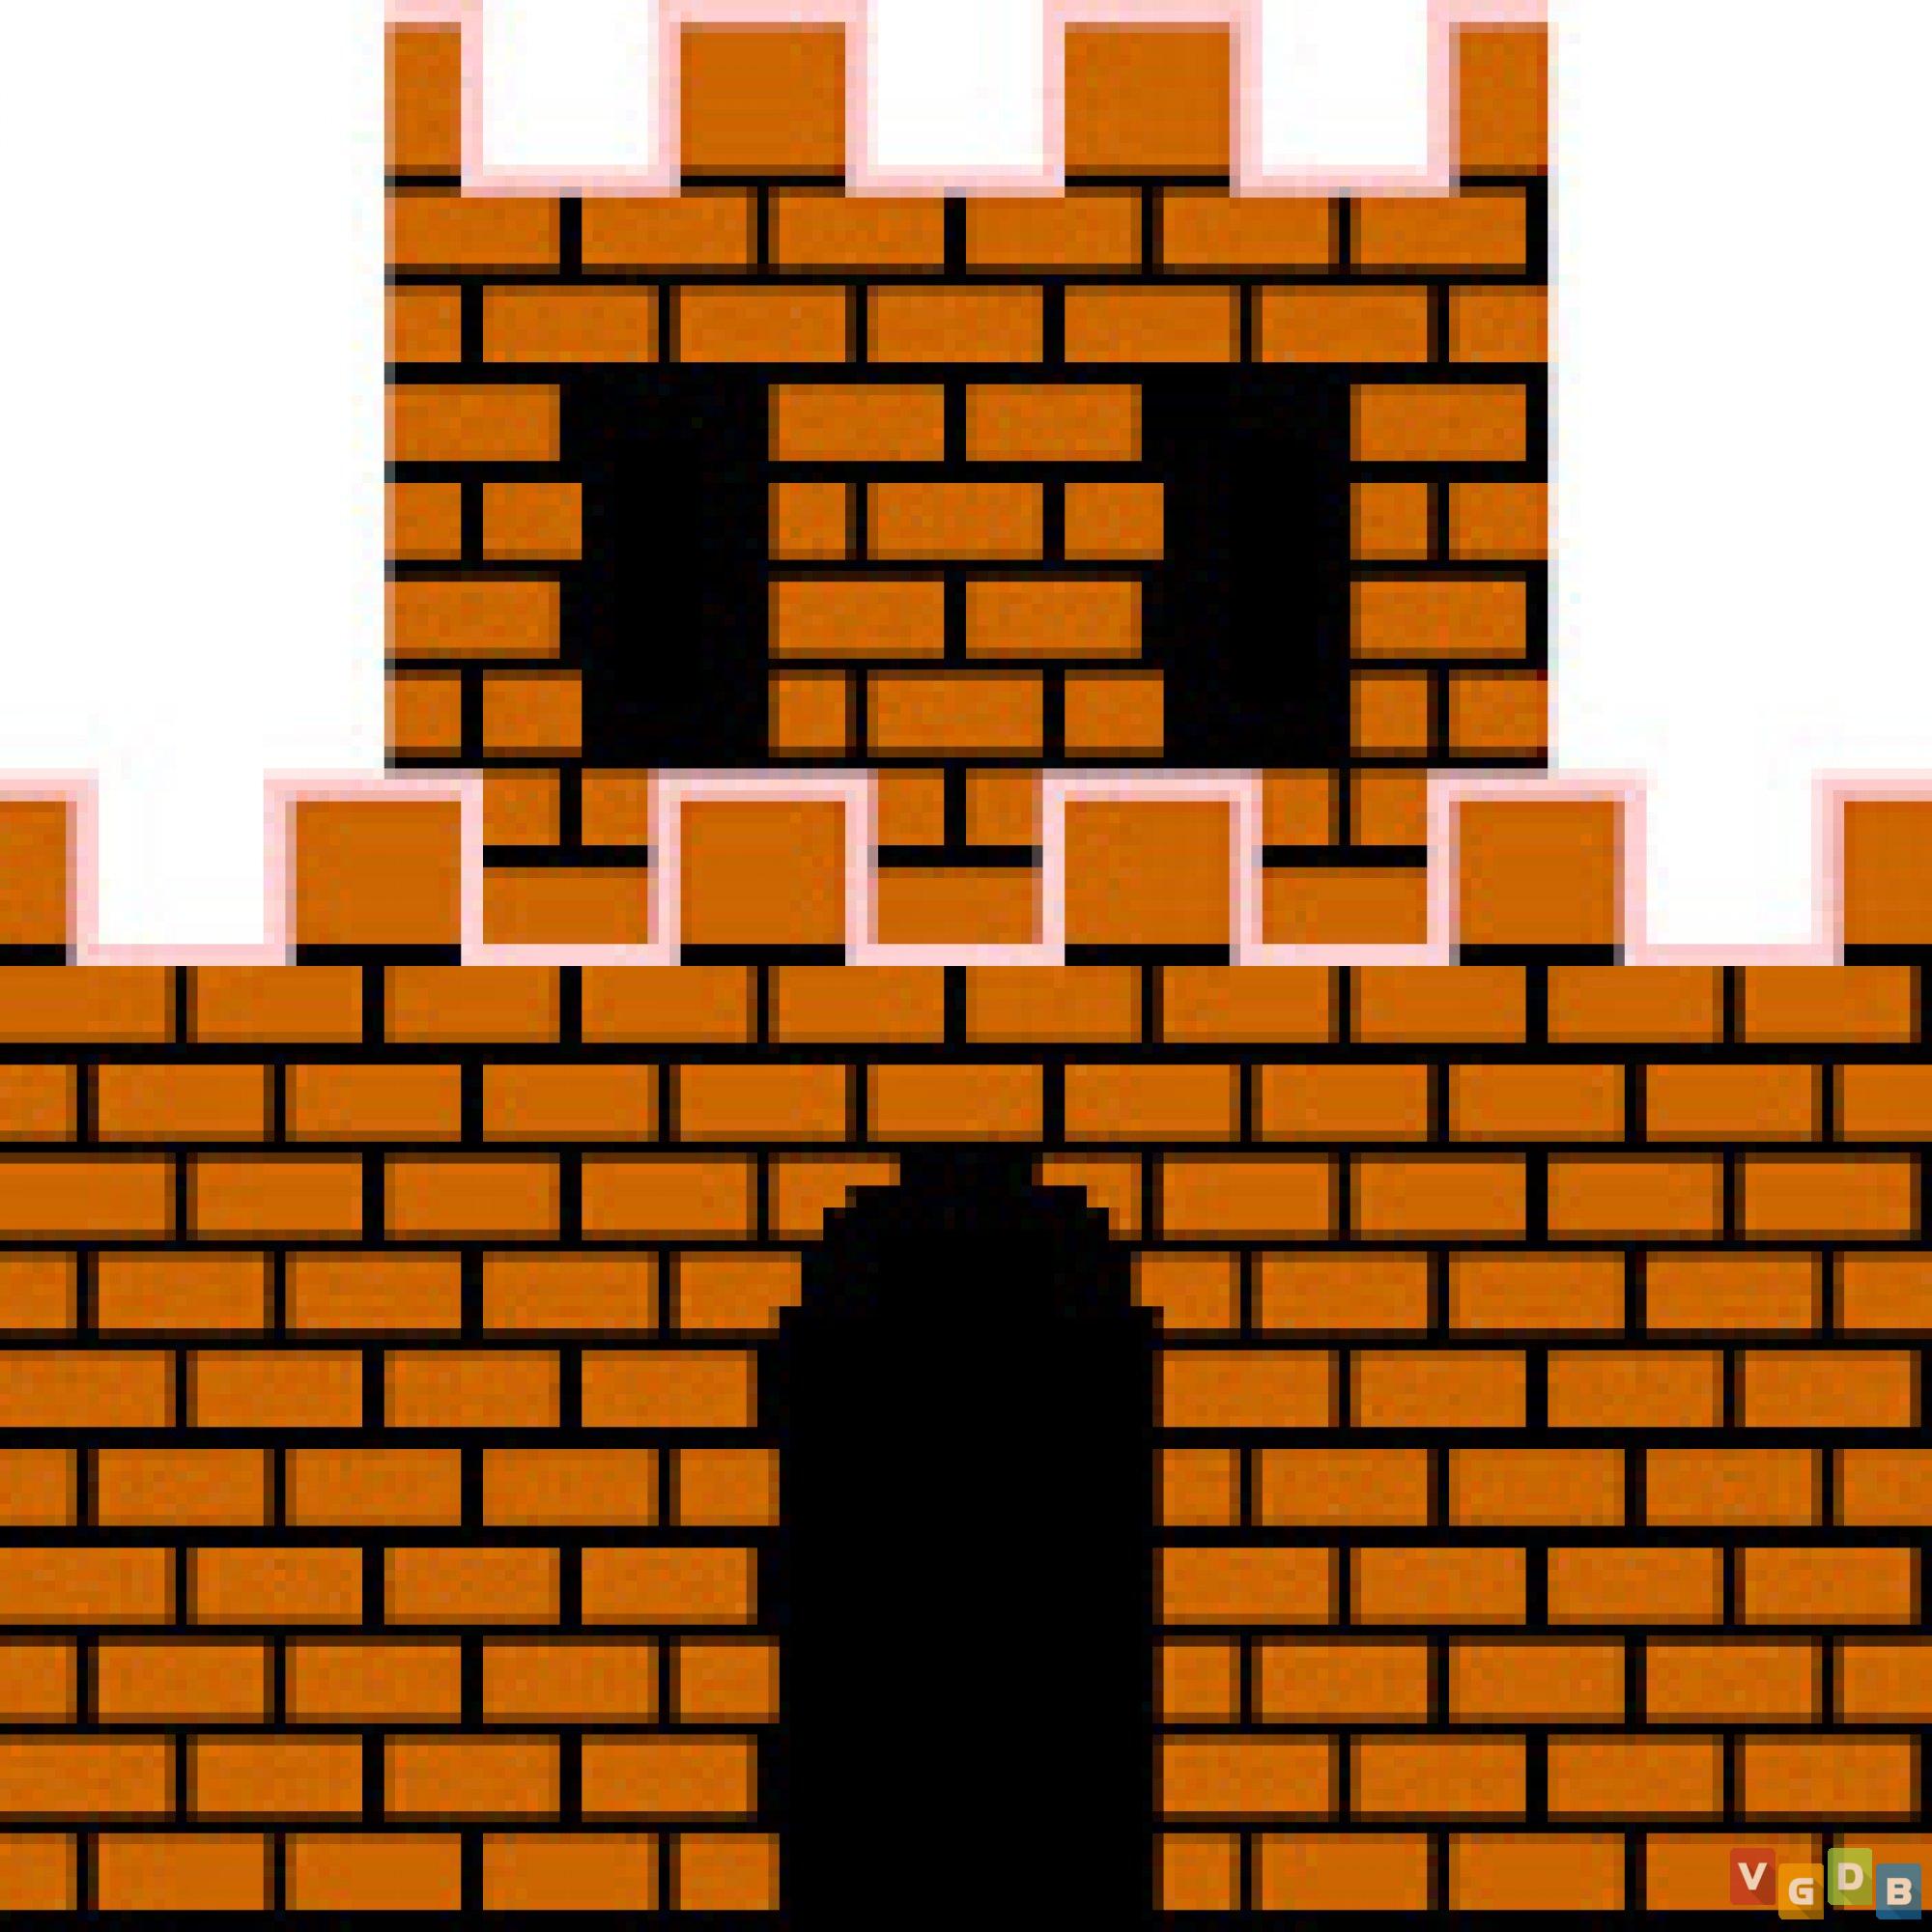 Марио пиксельный замок